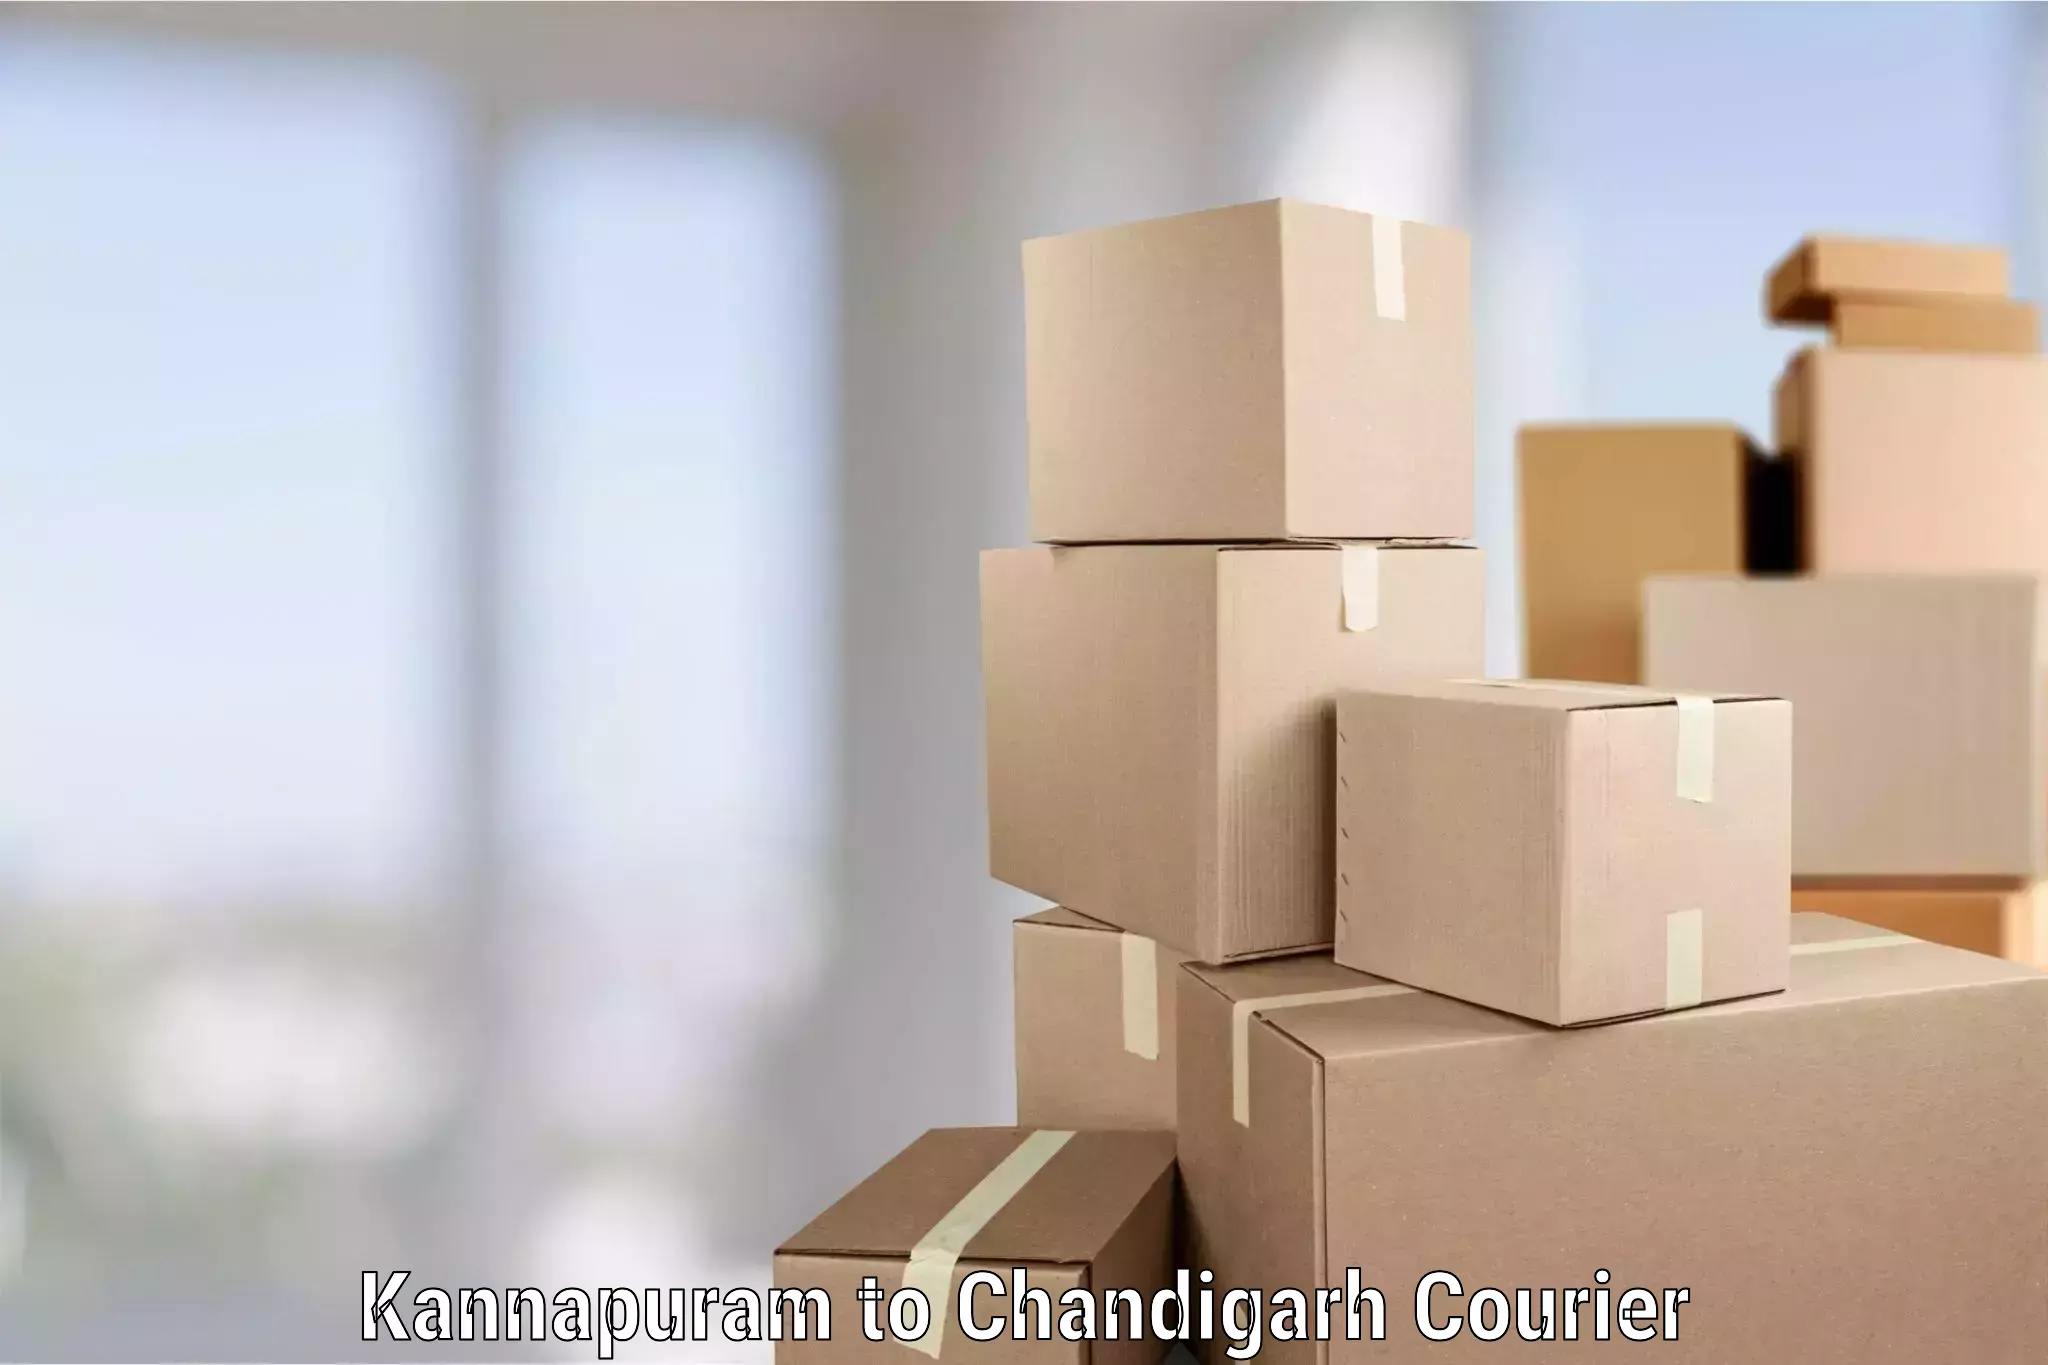 Professional home movers Kannapuram to Chandigarh